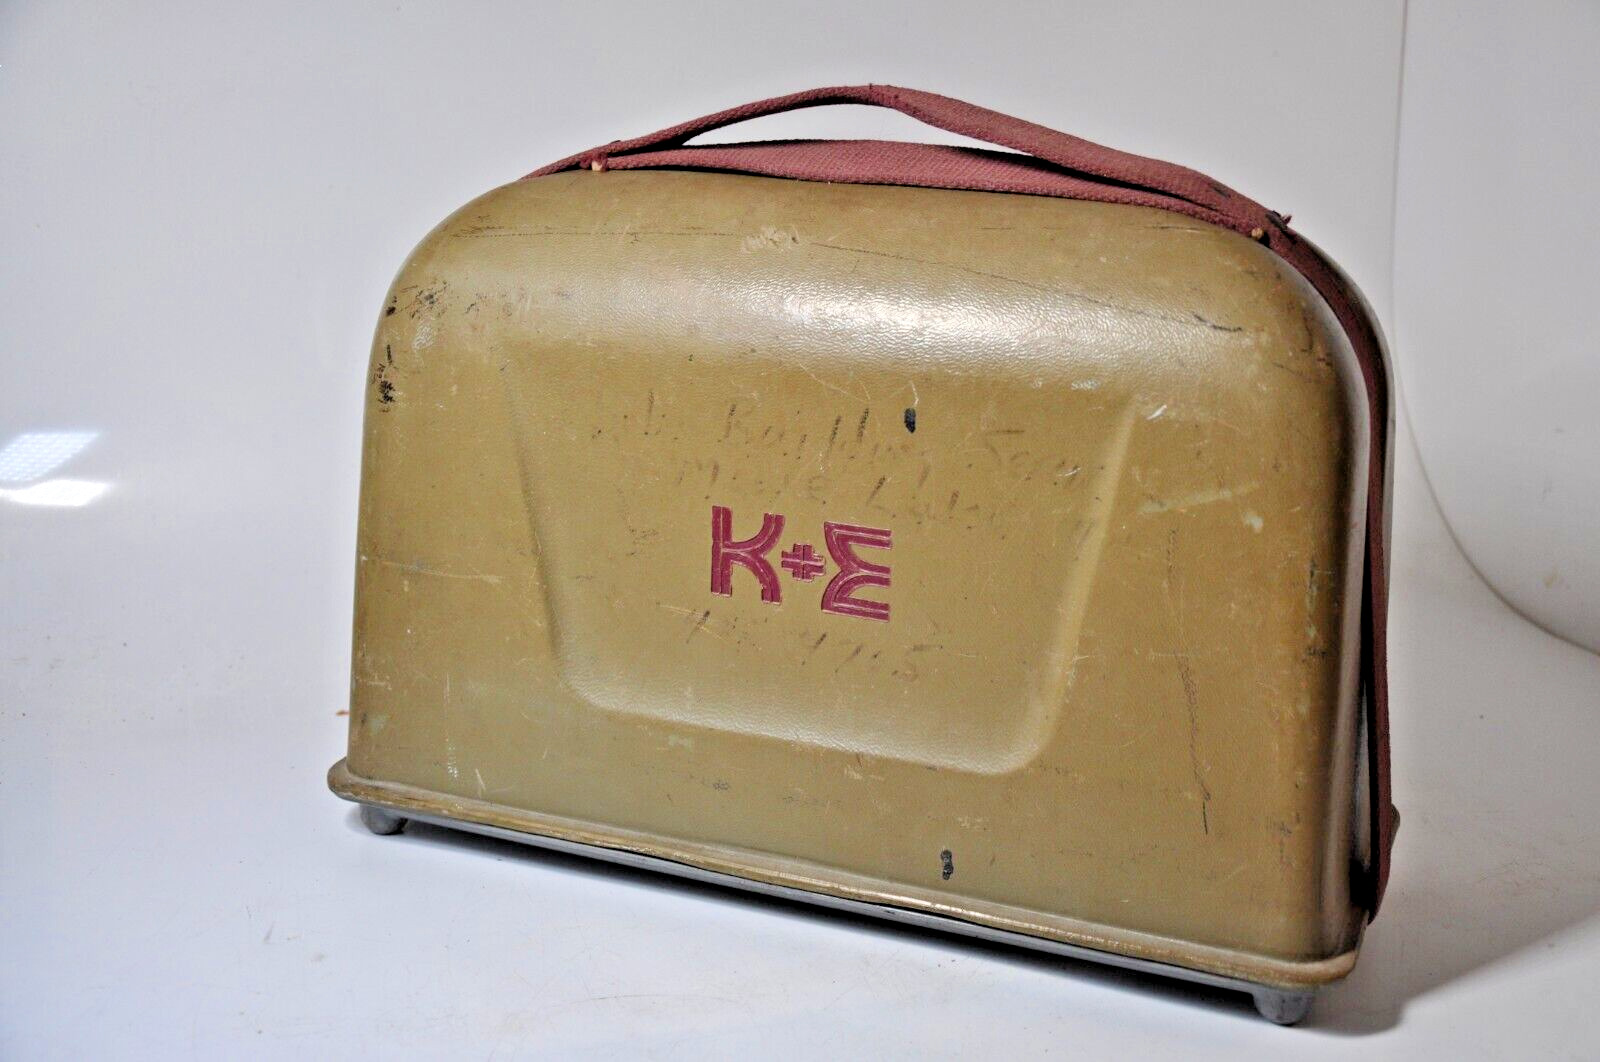 K&E / Keuffel & Esser Transit w/ Case, Model 77-0020